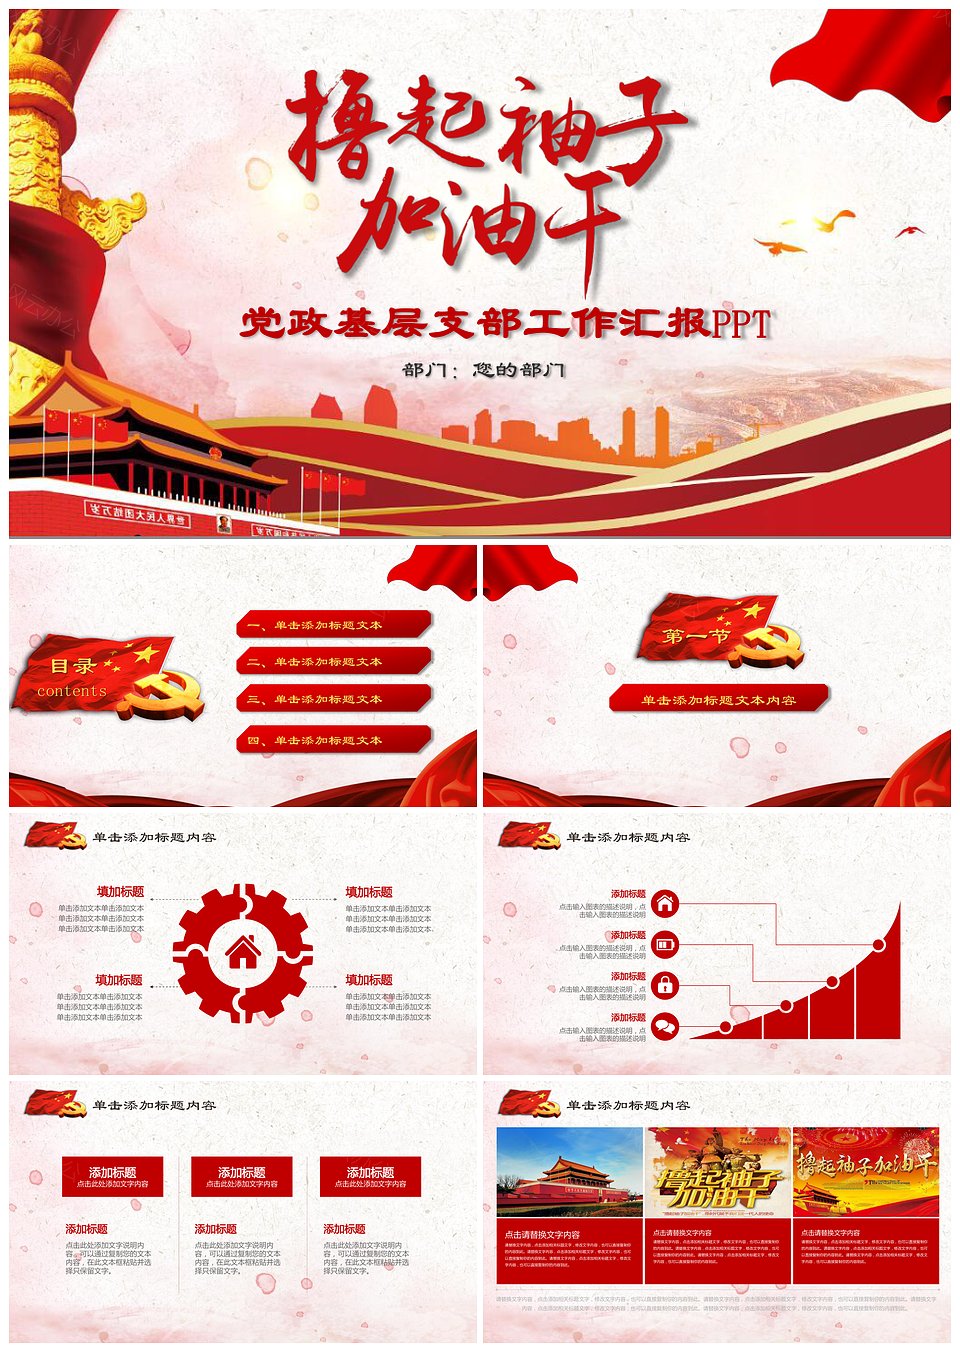 红色中国风撸起袖子加油干励志主题PPT模板下载